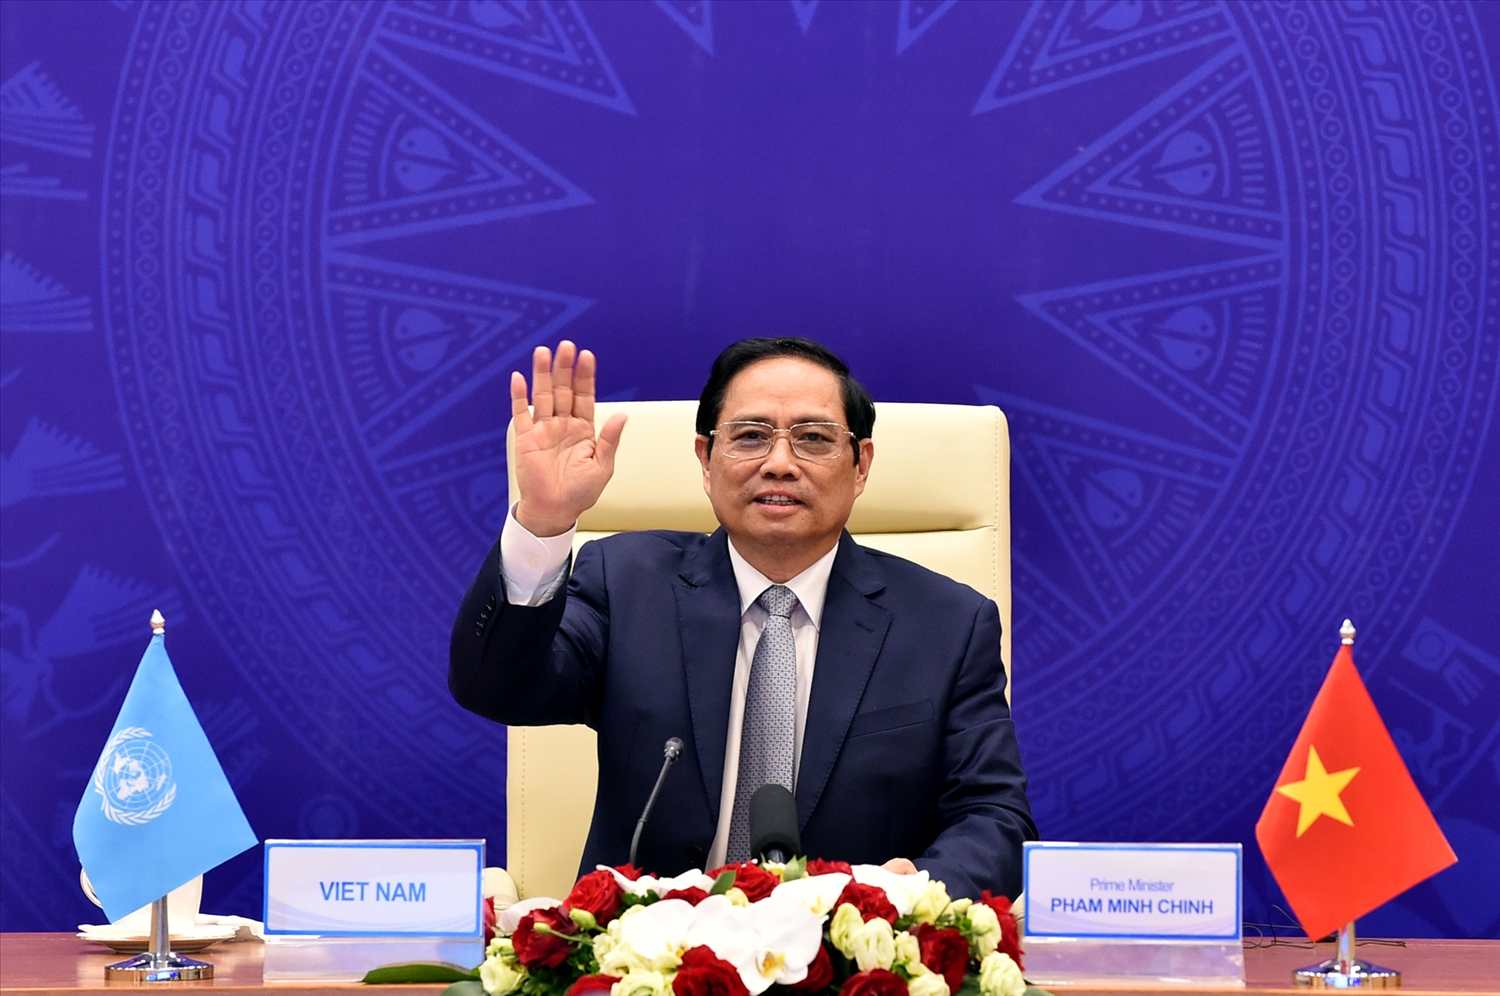 Thủ tướng Phạm Minh Chính: Việt Nam sẵn sàng đóng góp thúc đẩy đối thoại, xây dựng lòng tin, hợp tác với các nước để duy trì an ninh trên biển - Ảnh: VGP/Nhật Bắc